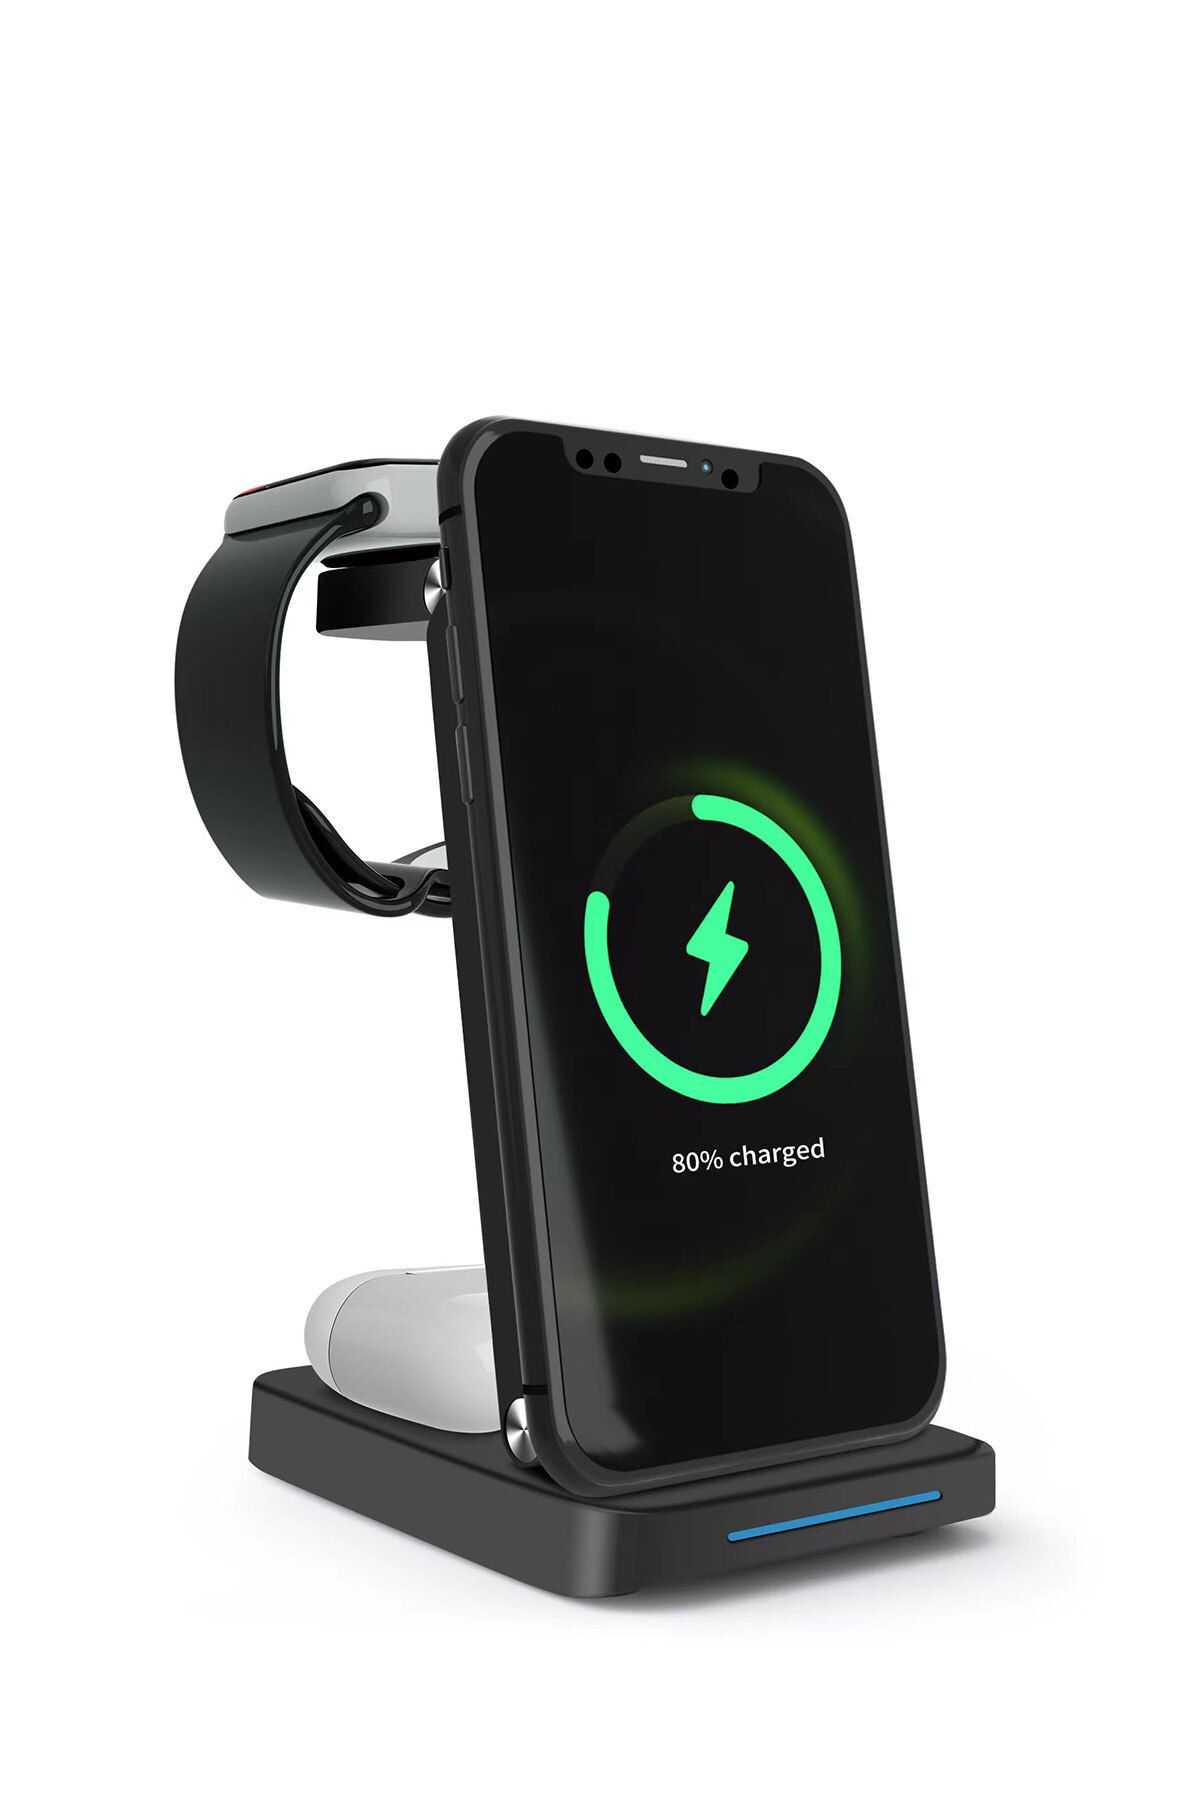 Woyax by Deji iPhone-Watch-Airpods Uyumlu Katlanabilir 15W Hızlı Wireless Kablosuz Şarj Standı